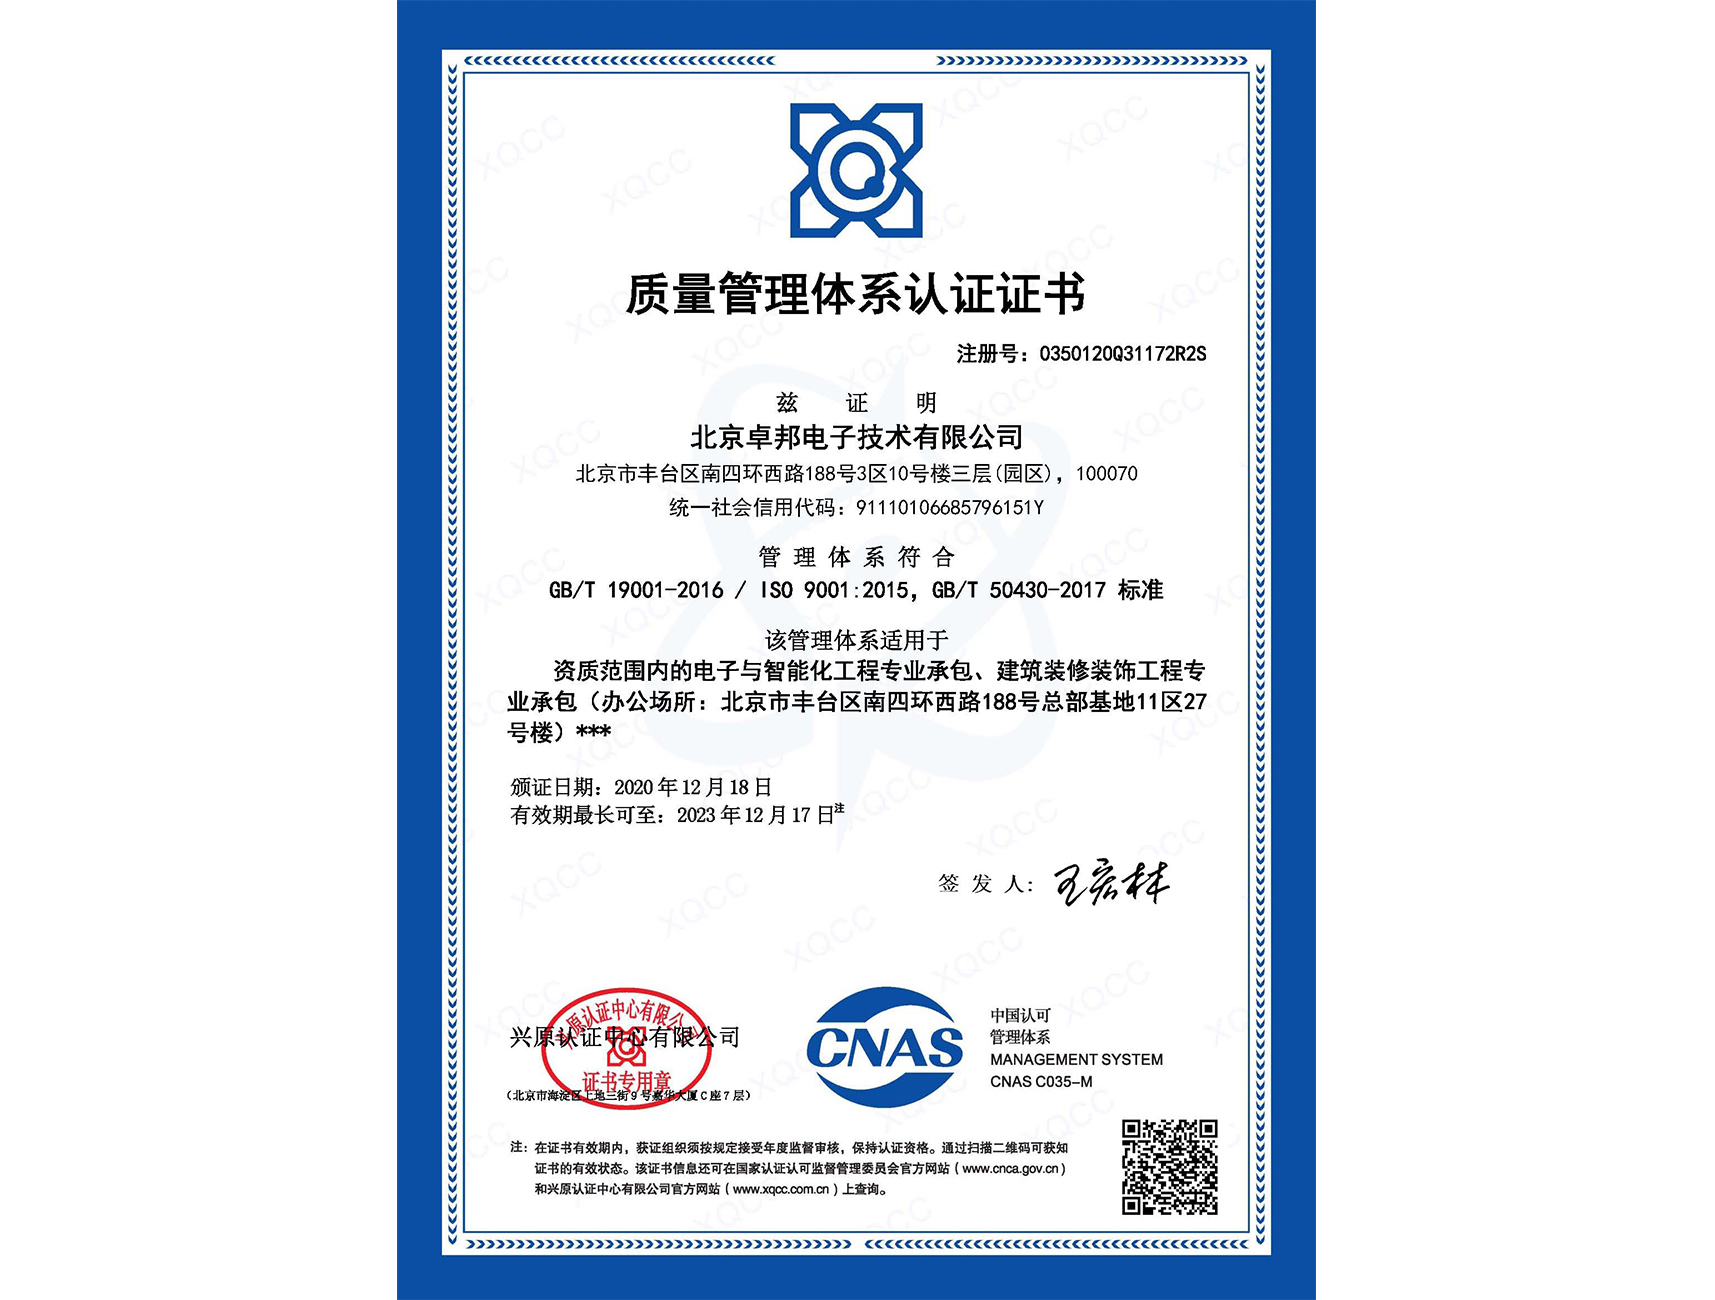 品质办理系统认证证书50430